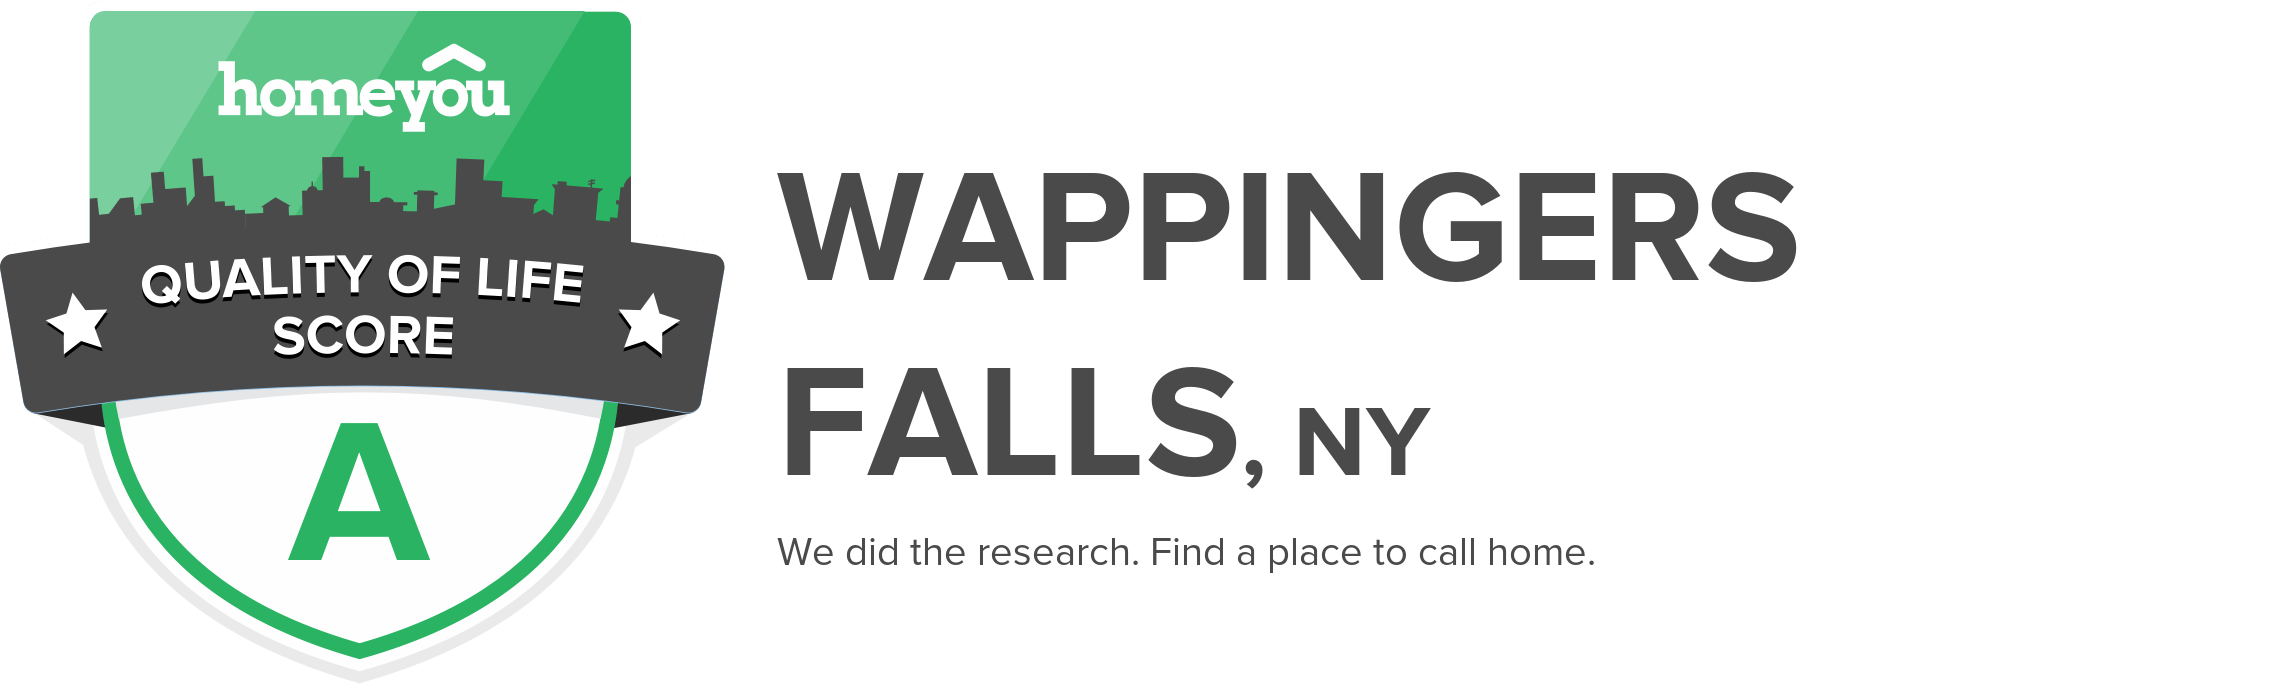 Wappingers Falls, NY